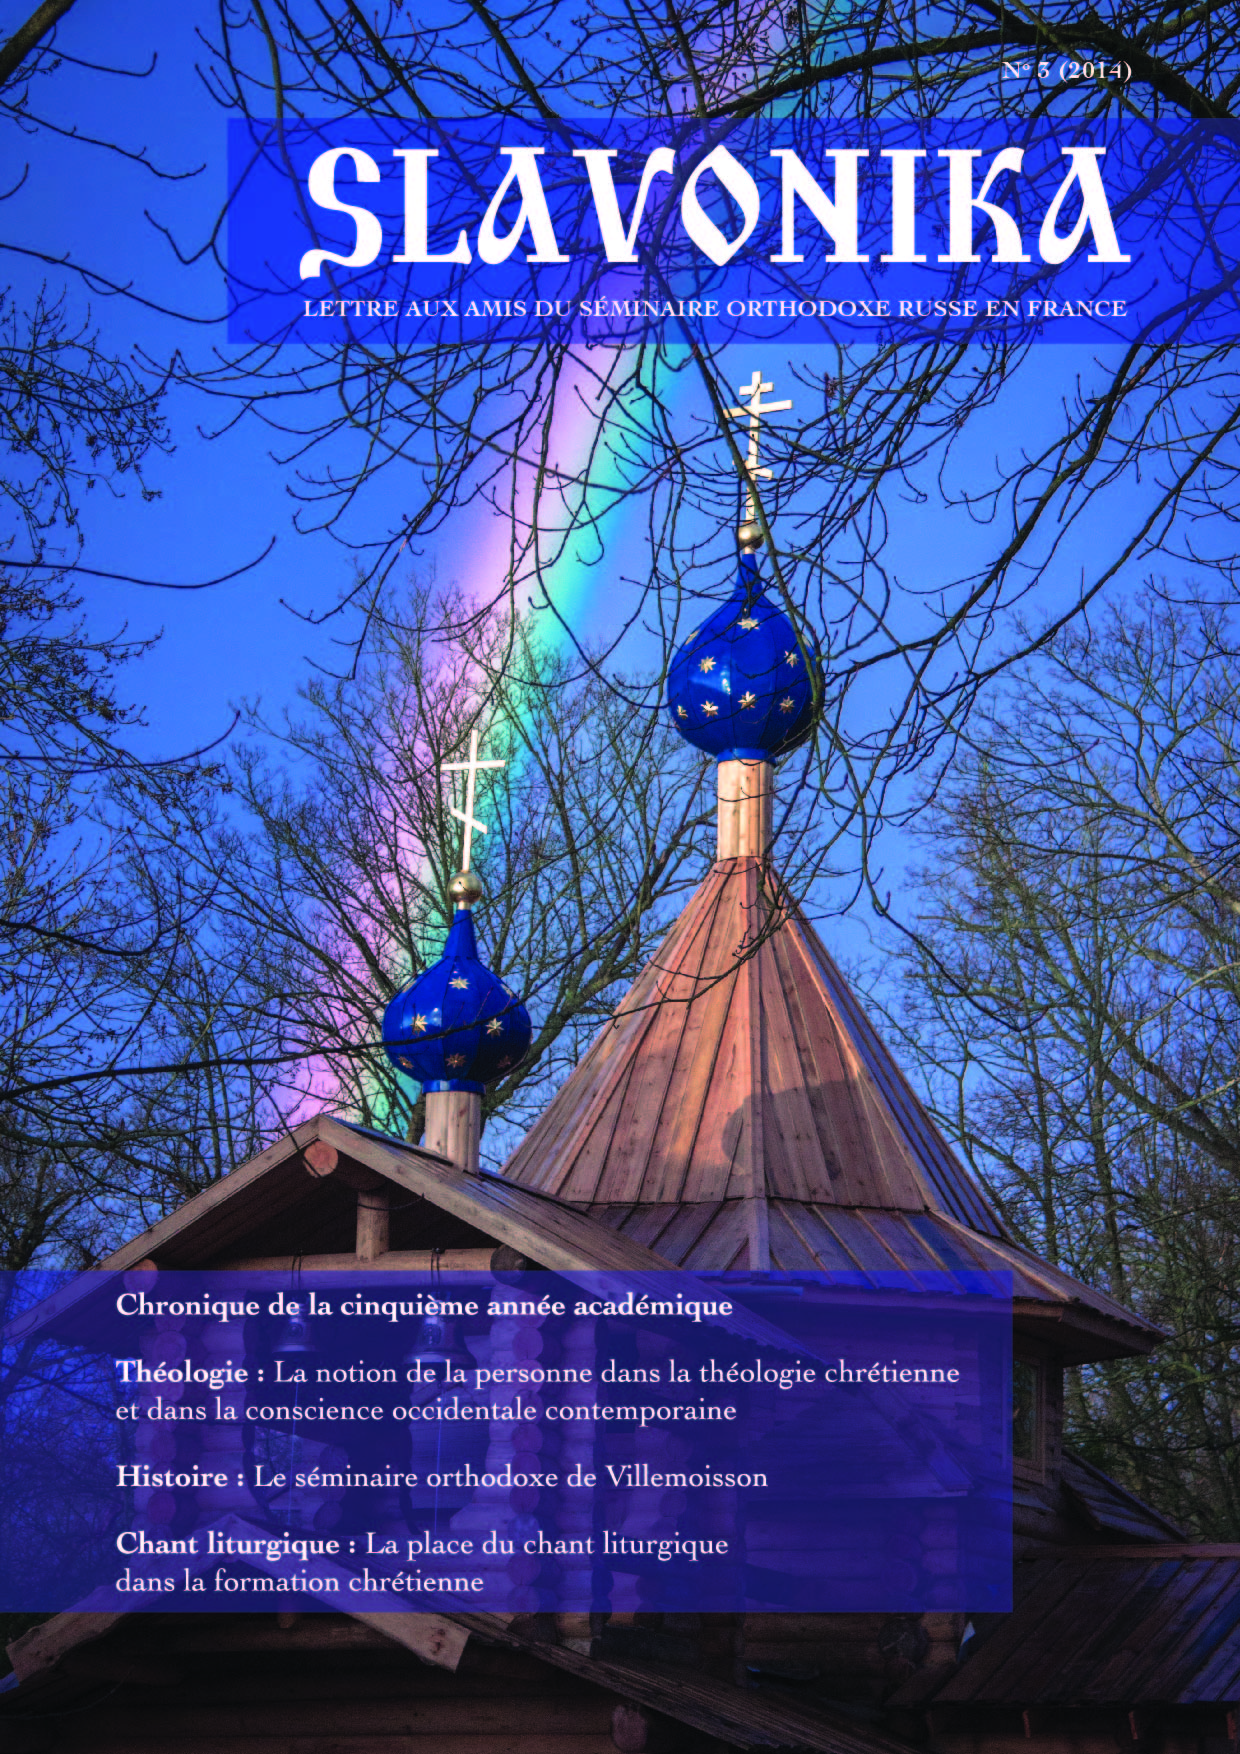 Parution du numéro 2014 de "SLAVONIKA", revue annuelle du Séminaire orthodoxe russe en France